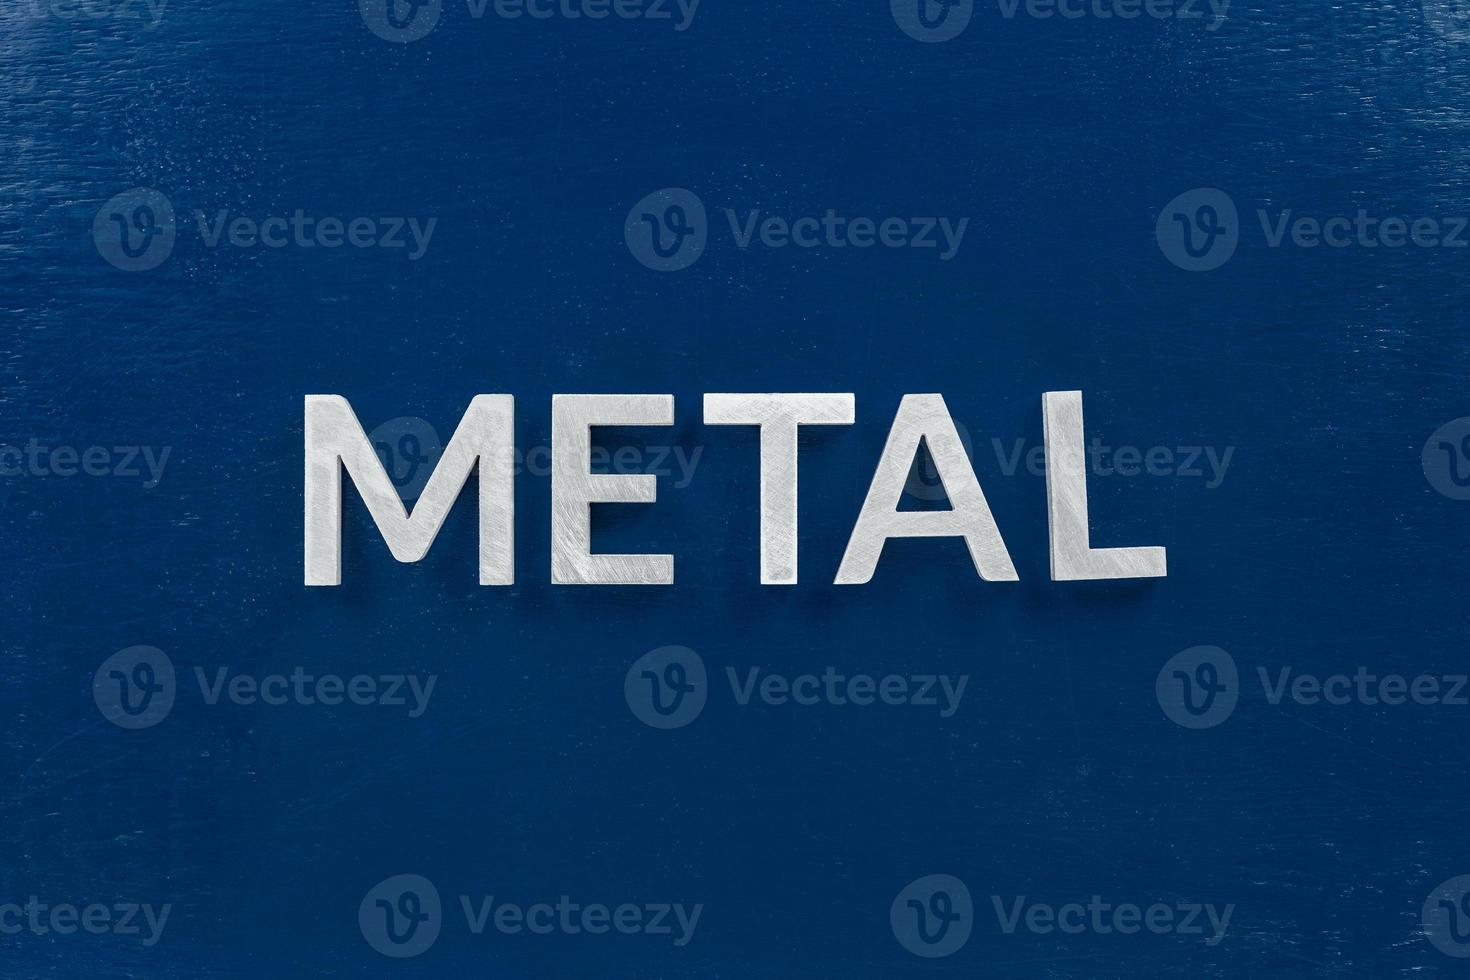 a palavra metal colocada com letras prateadas na superfície de cor azul foto